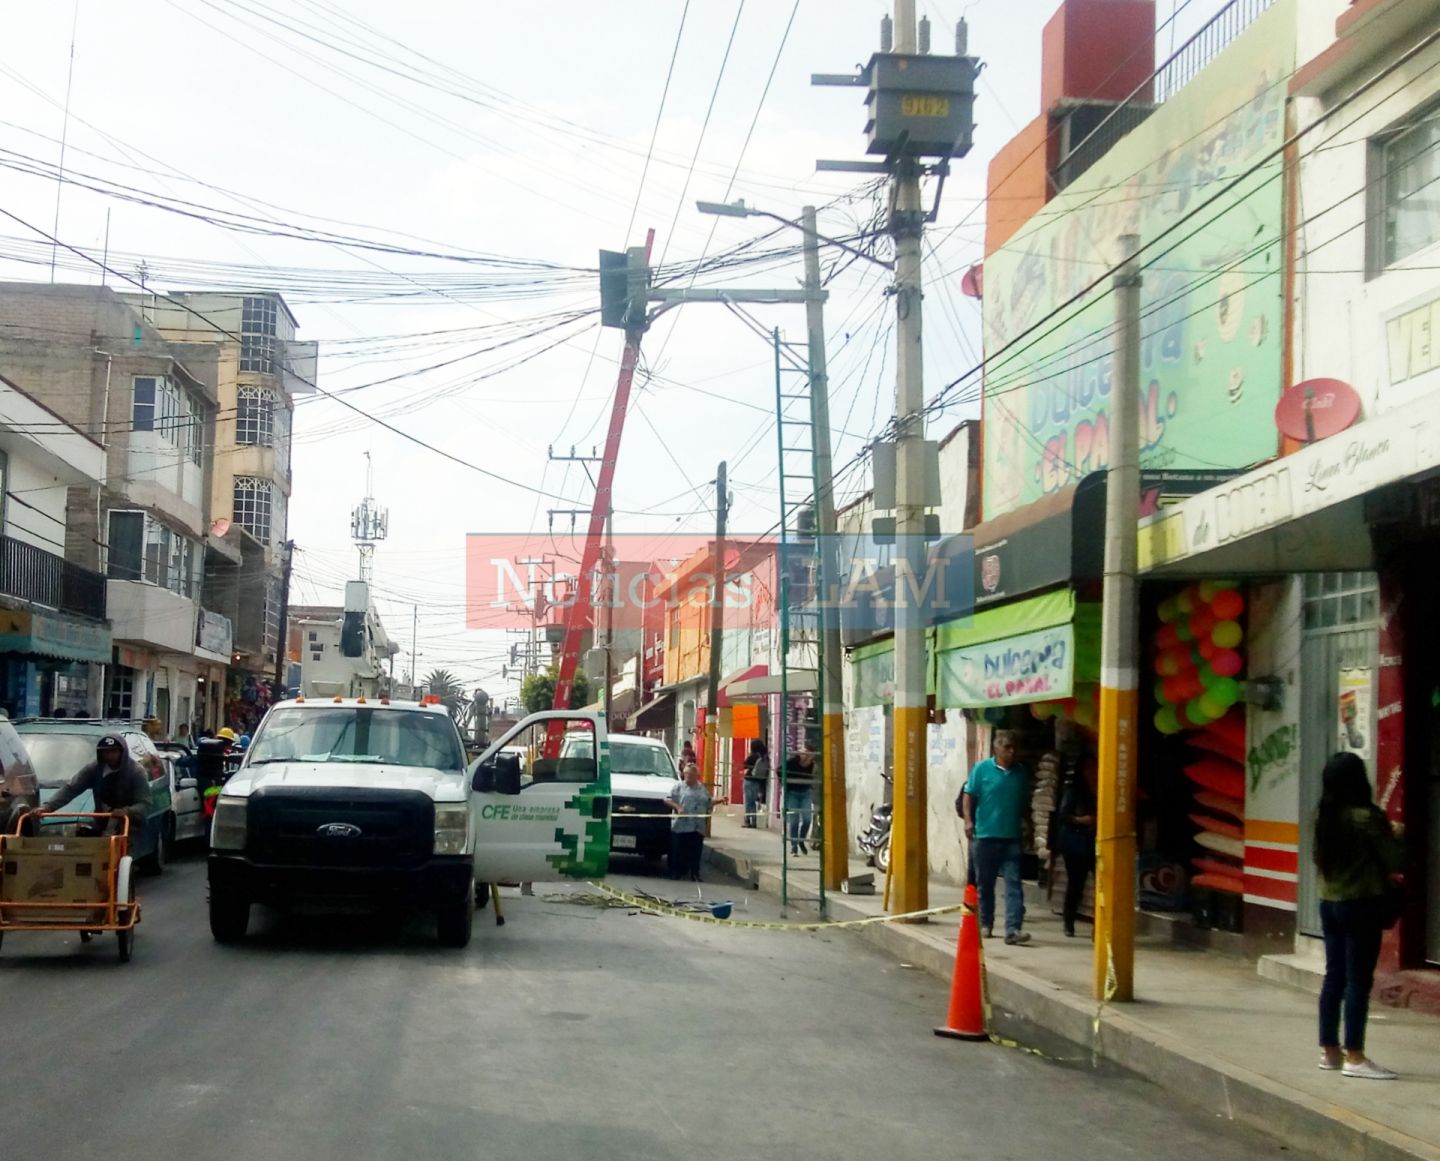 Trabajador de la CFE provoca cortocircuito en postes de luz en la calle Colón en el centro de Texcoco.